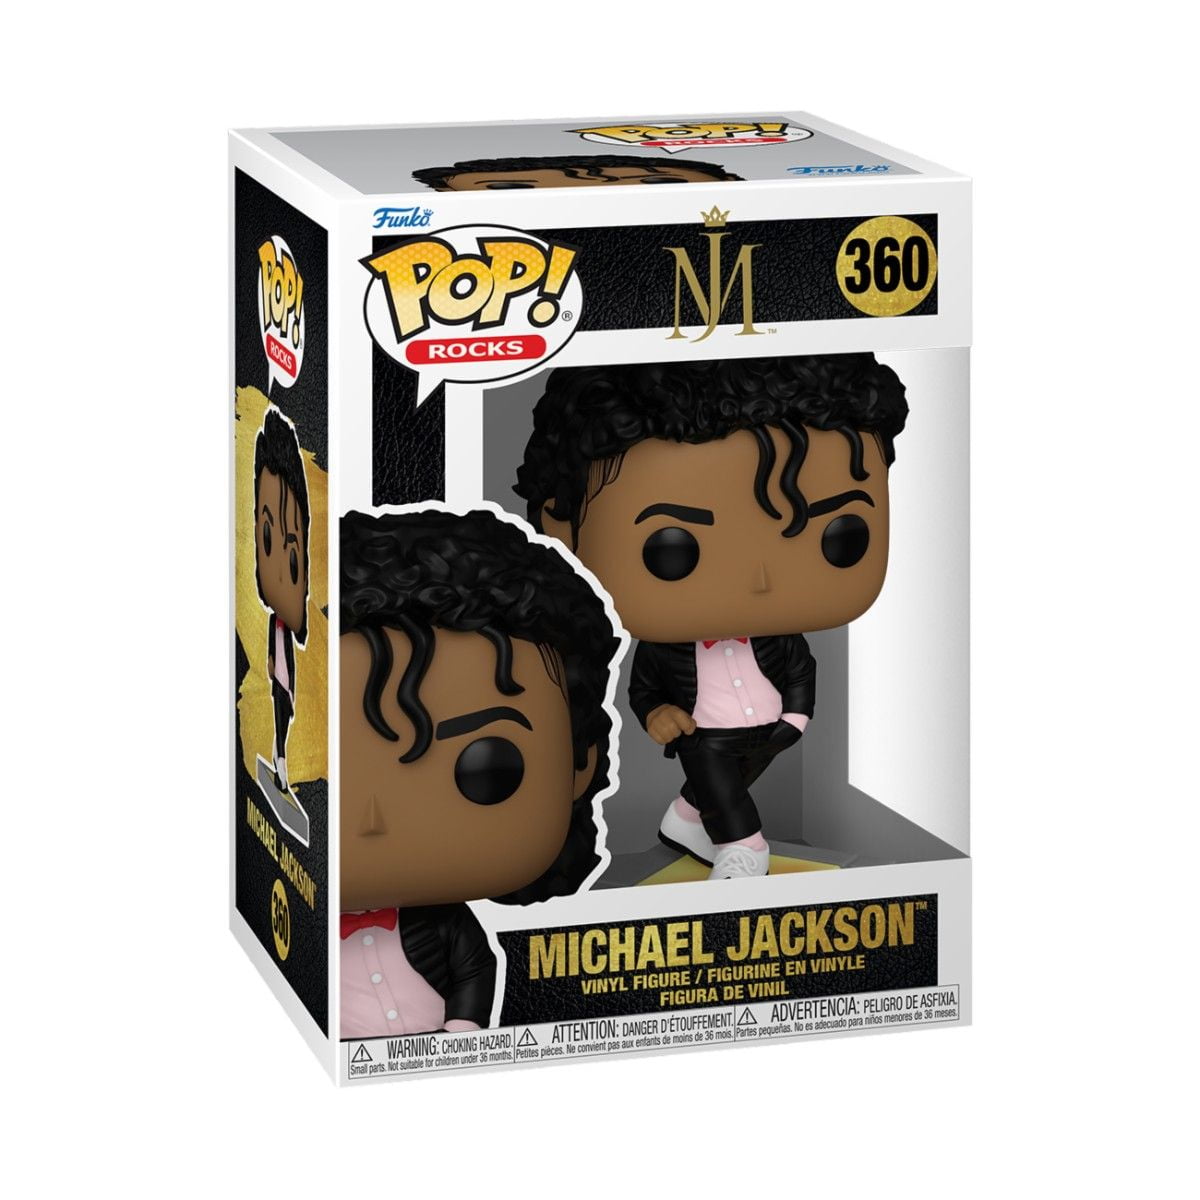 Michael Jackson - Billie Jean - Funko POP! Rocks (360)